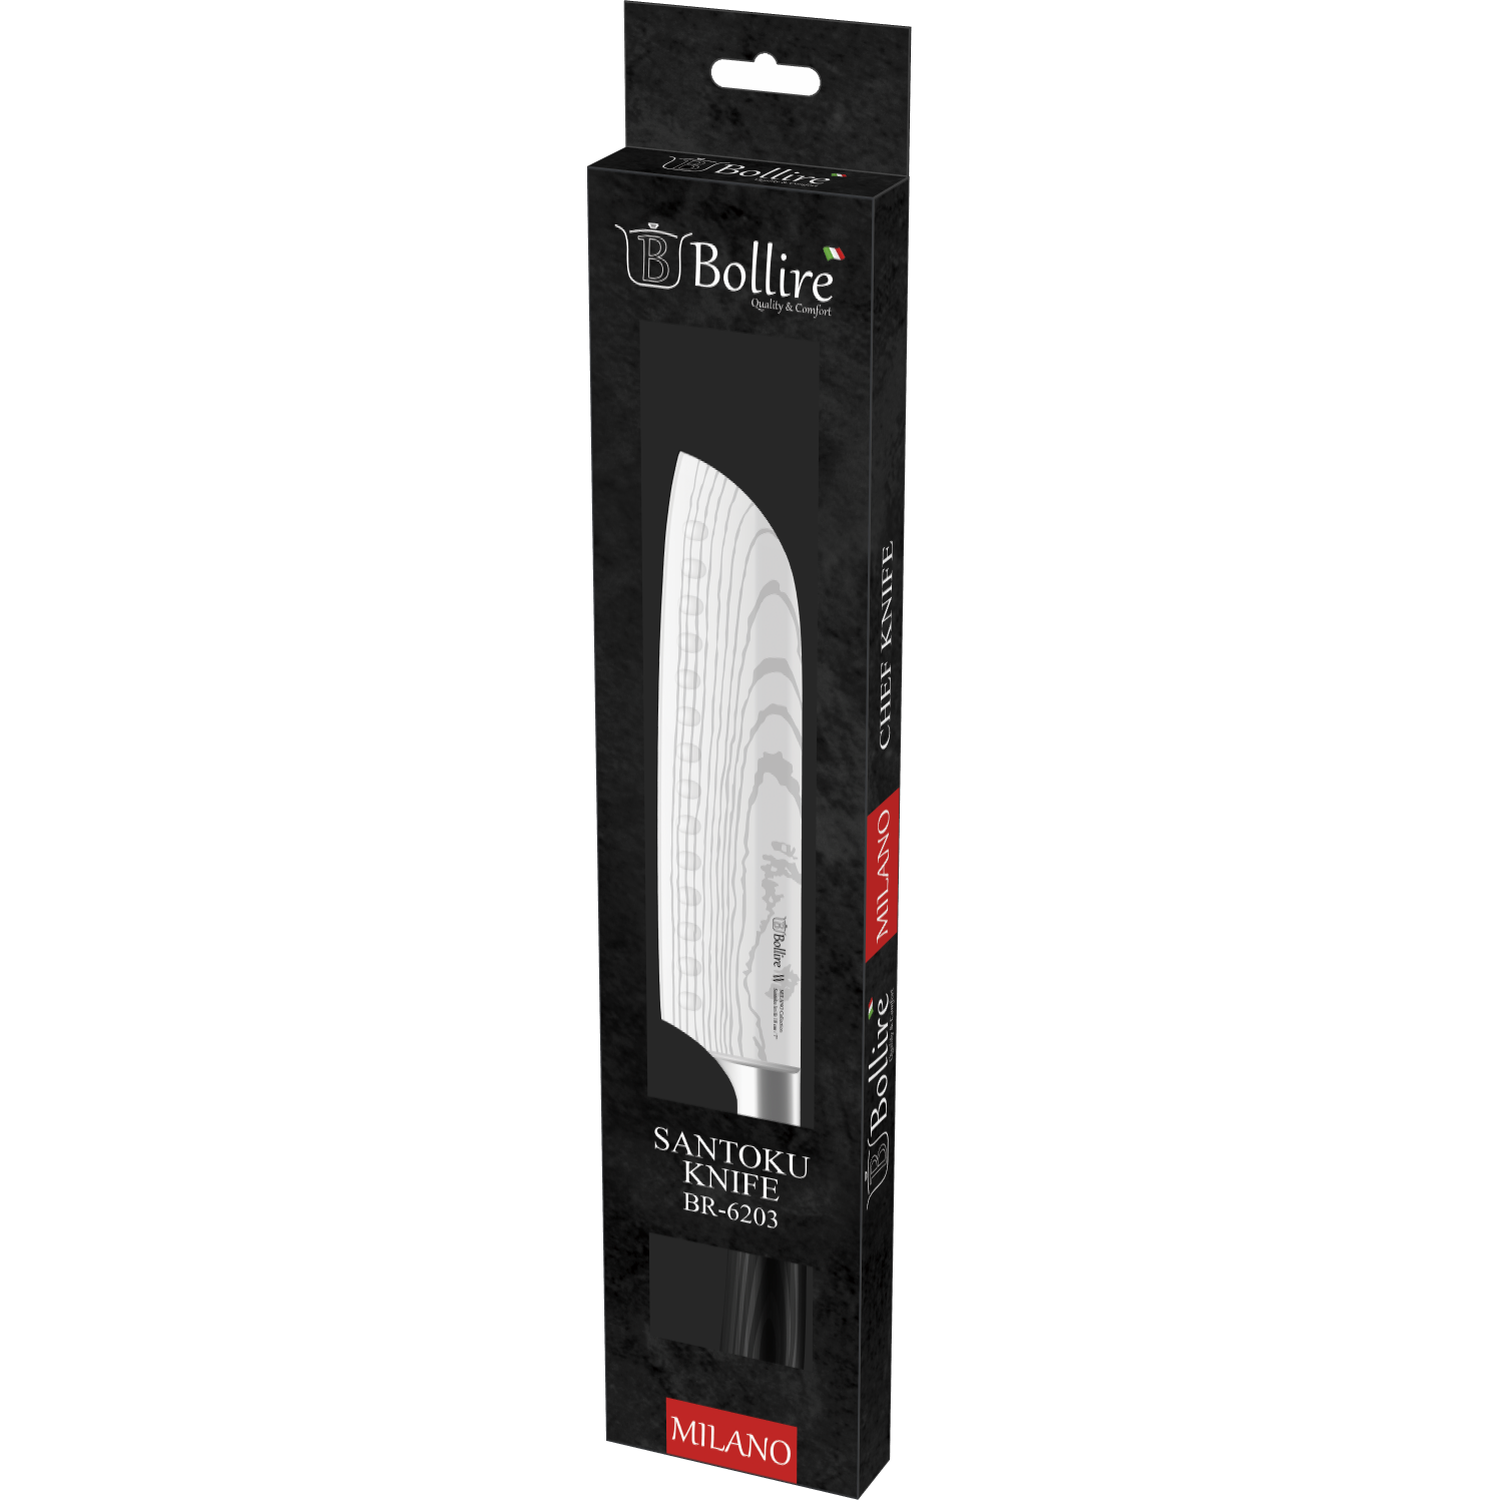 Нож сантоку Bollire Milano, 18 см (BR-6203) - фото 3